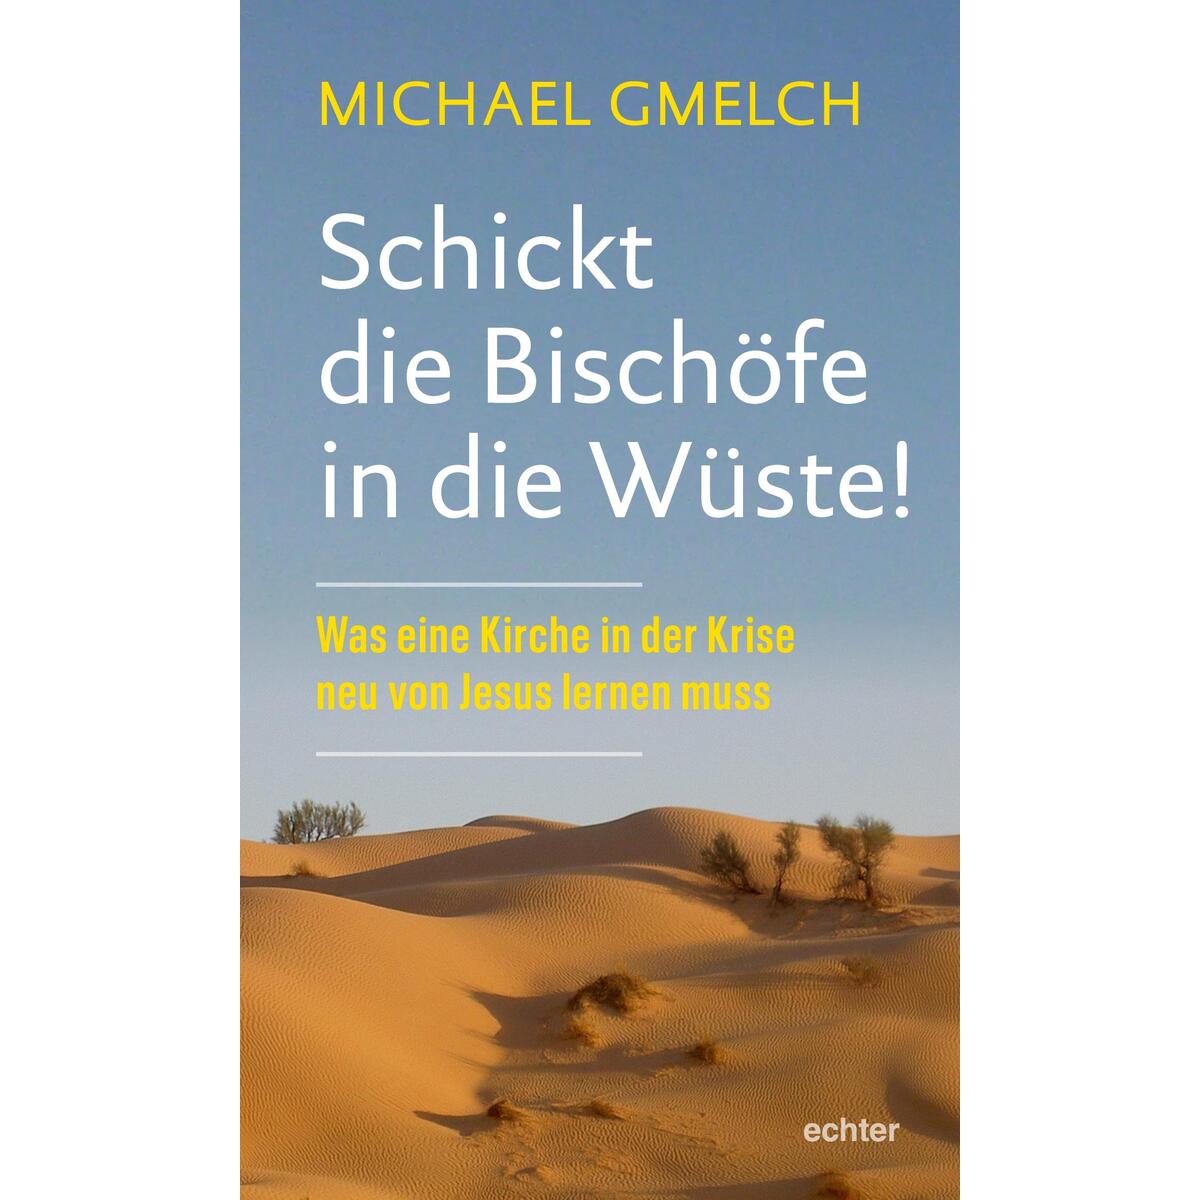 Schickt die Bischöfe in die Wüste! von Echter Verlag GmbH